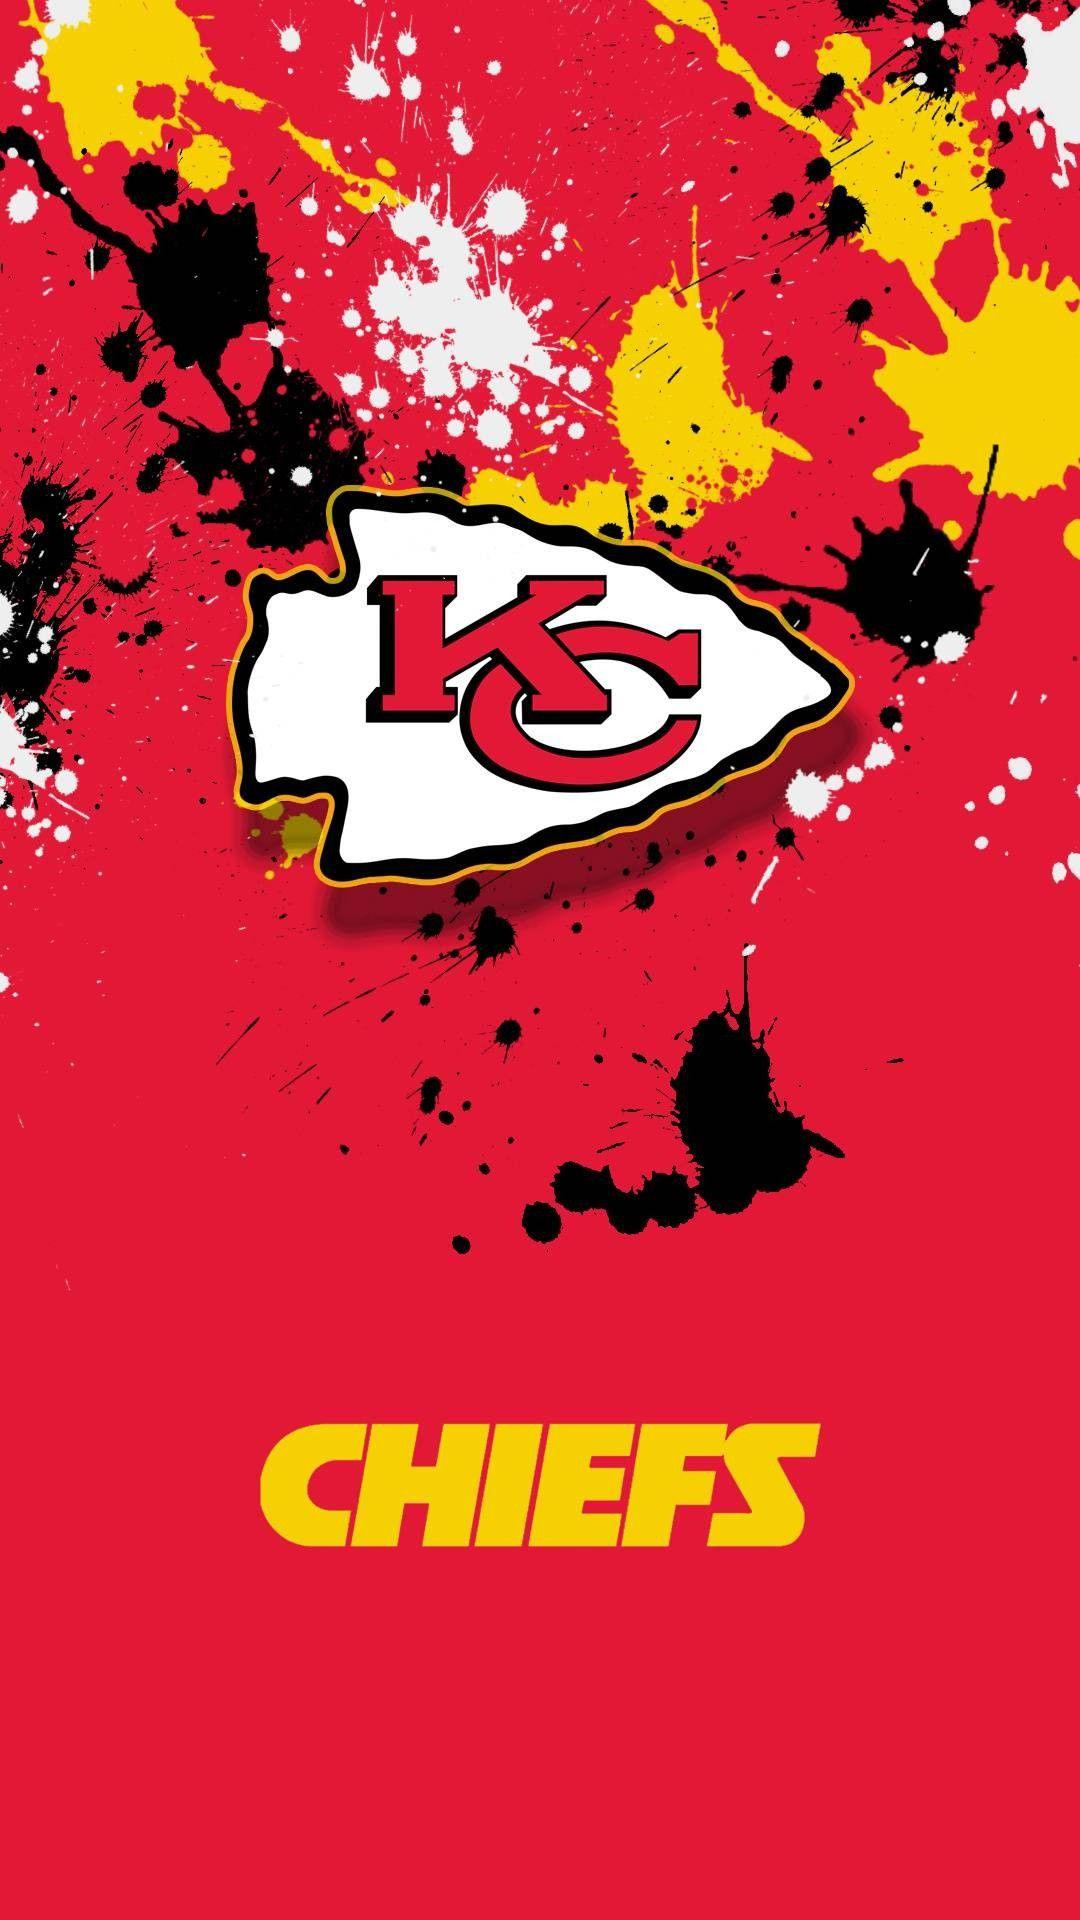 Chiefs logo, Kansas city chiefs.com